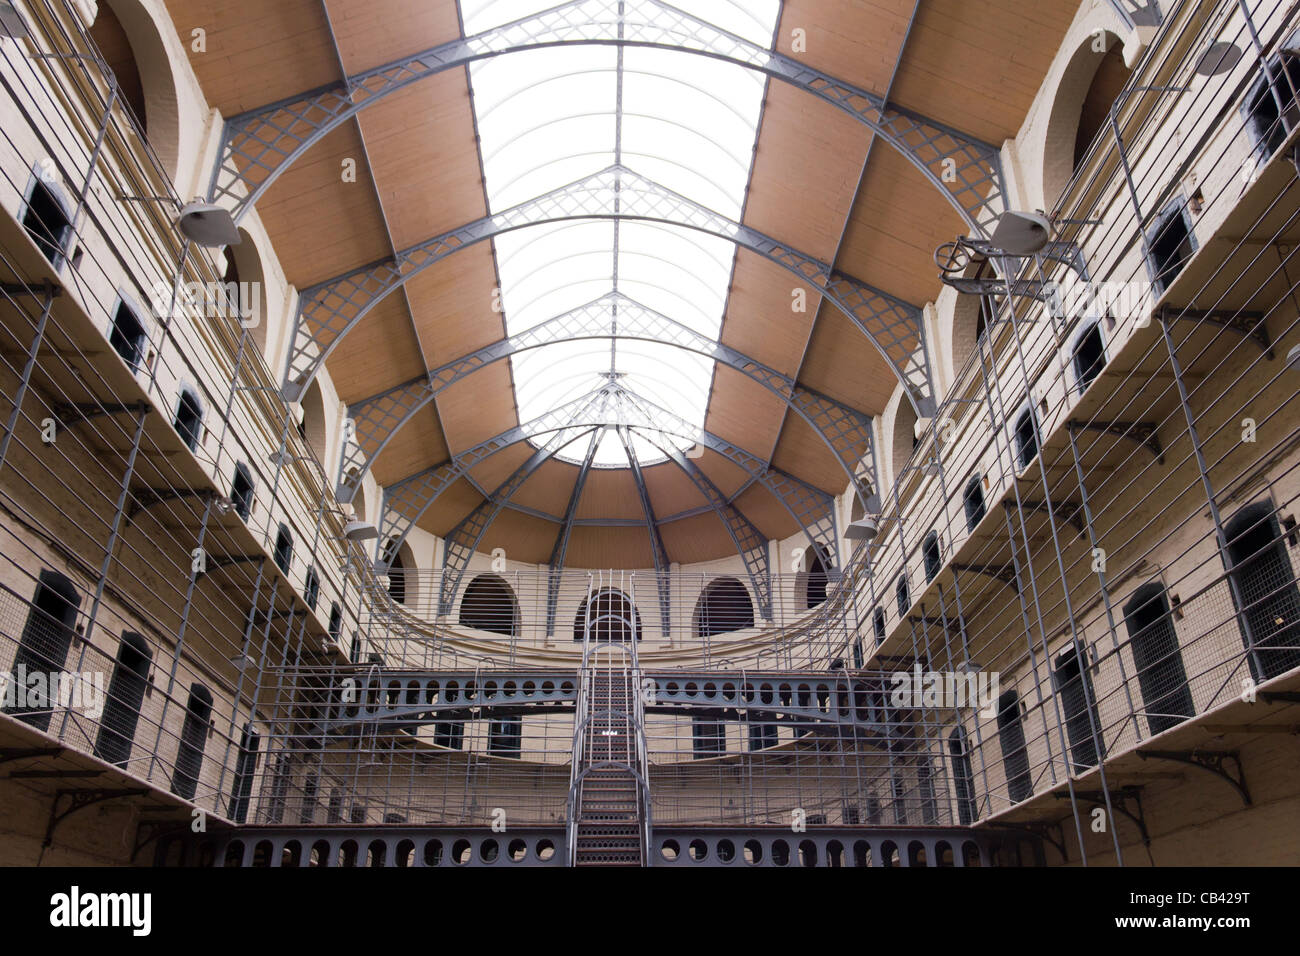 La prison de Kilmainham, Dublin, Irlande Banque D'Images